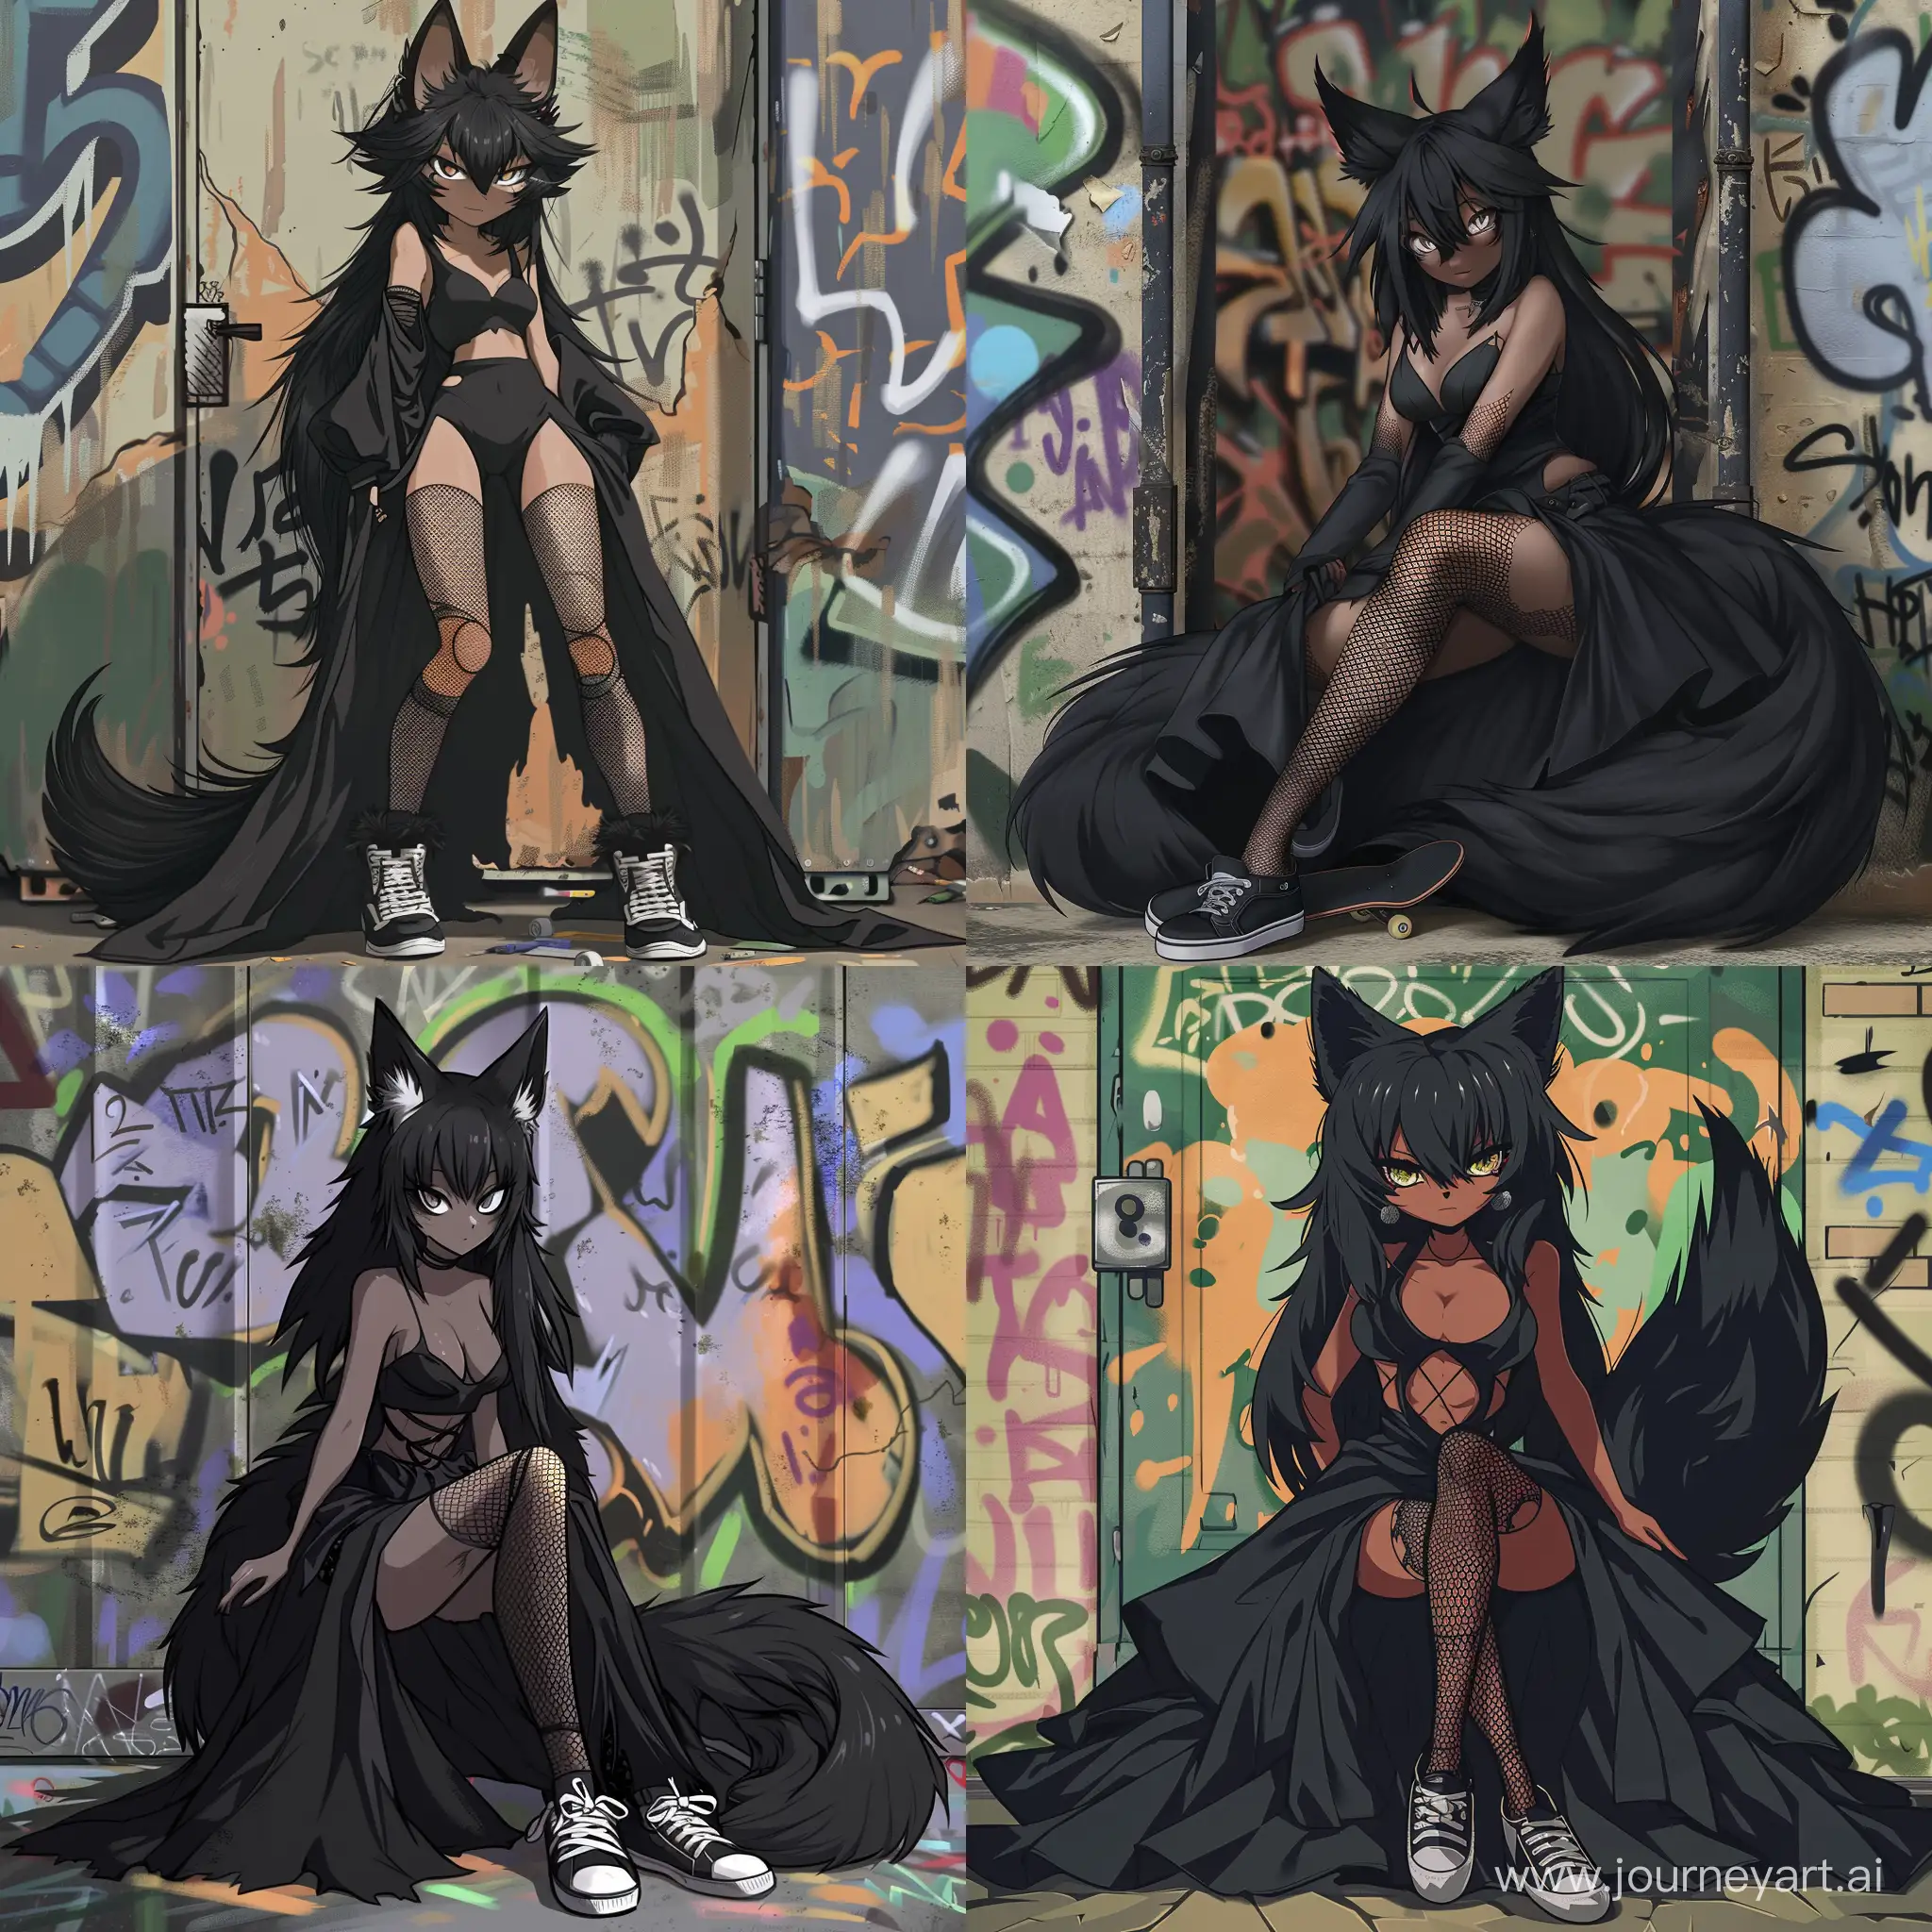 Sassy-Black-Fox-Anthro-Girl-in-Urban-Graffiti-Setting